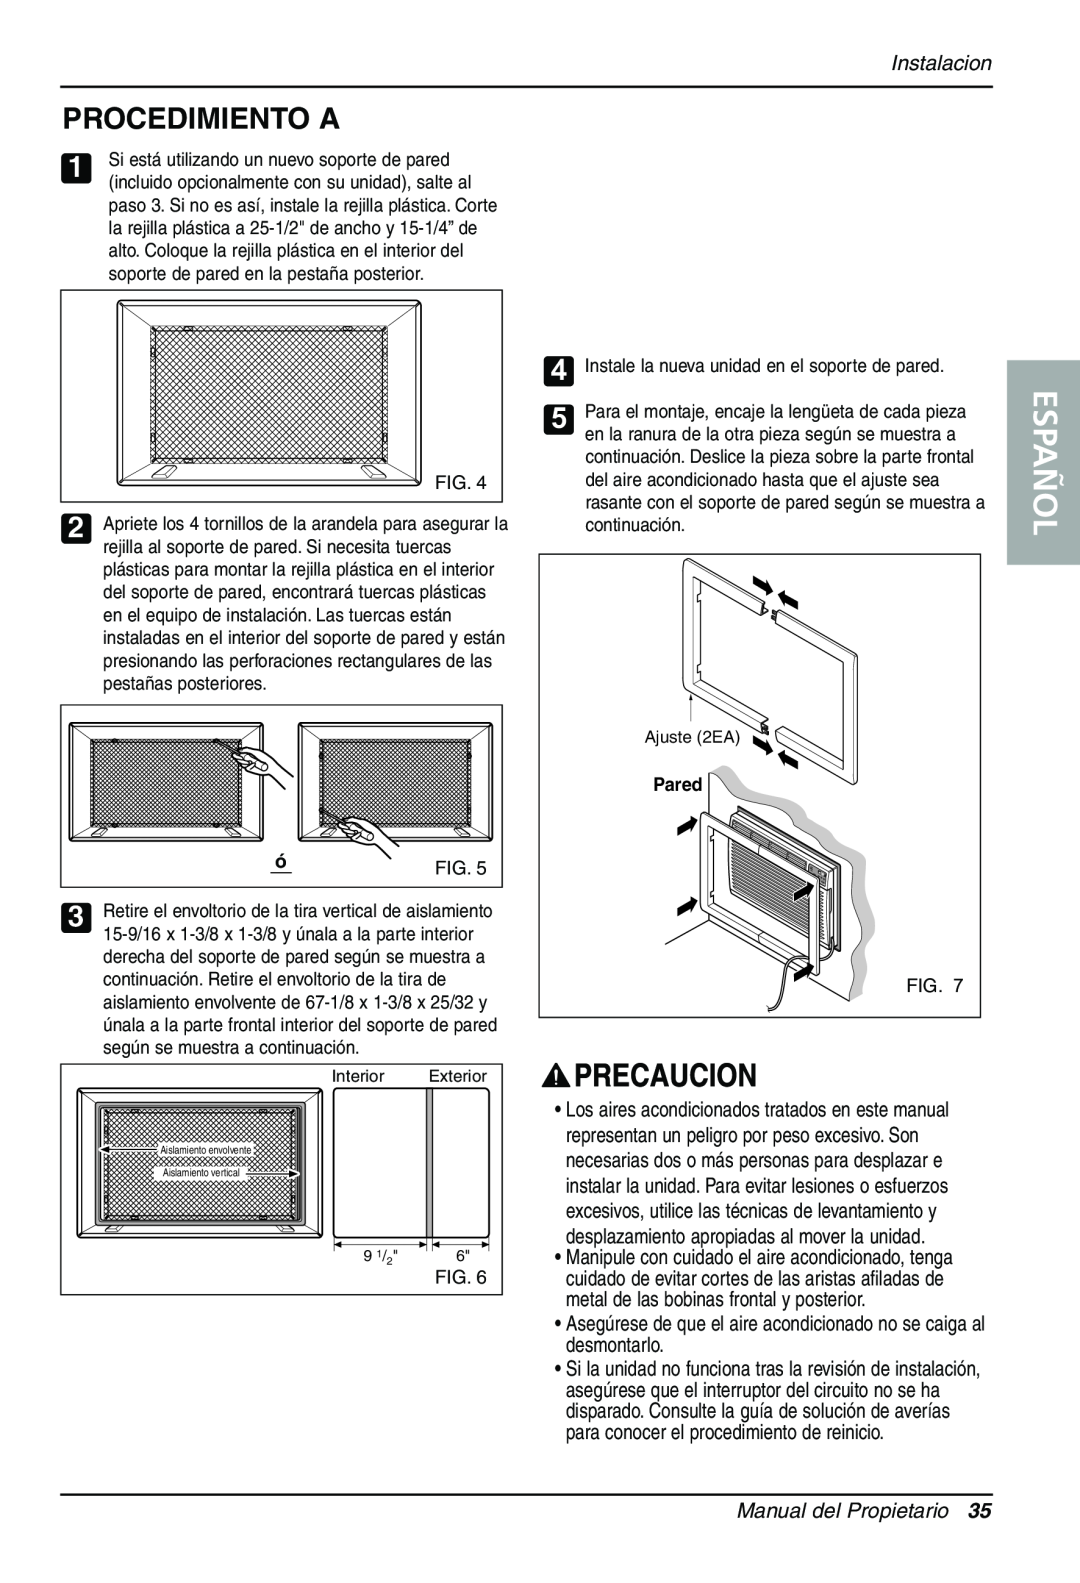 Sears LT143CNR, LT123CNR, LT103CNR manual Procedimiento A, Español, Instalacion, Manual del Propietario, Pared 